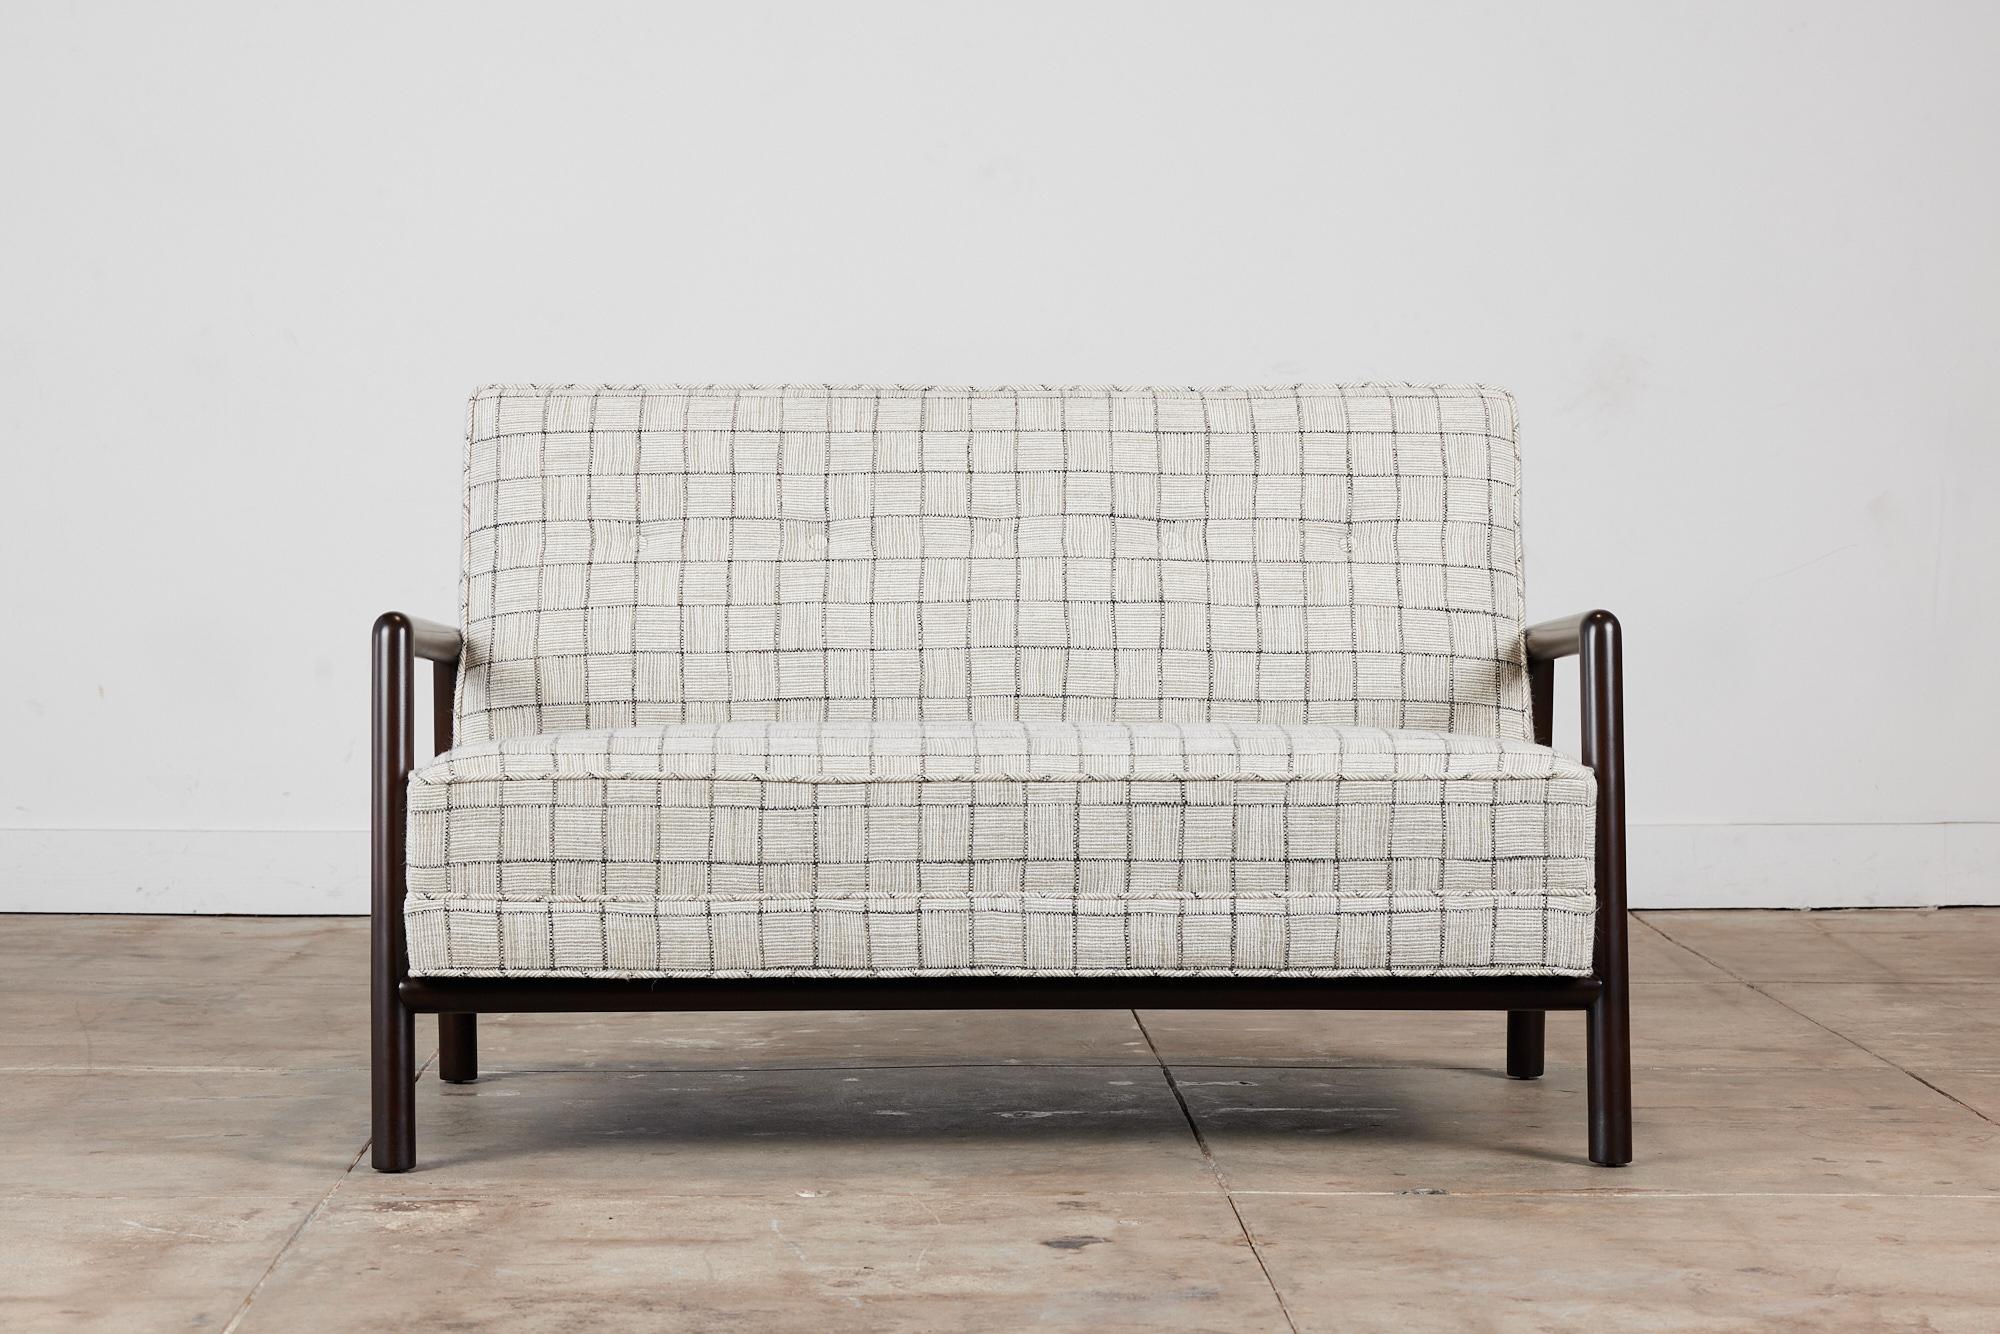 Liegesofa von T.H Robsjohn Gibbings für Widdicomb, 1950er Jahre, USA. Dieses Sofa hat ein abgerundetes Gestell aus gebeiztem Buchenholz mit Armlehnen. Die Kissen wurden neu mit einem grauen Fensterscheiben-Wollmischgewebe bezogen und haben eine